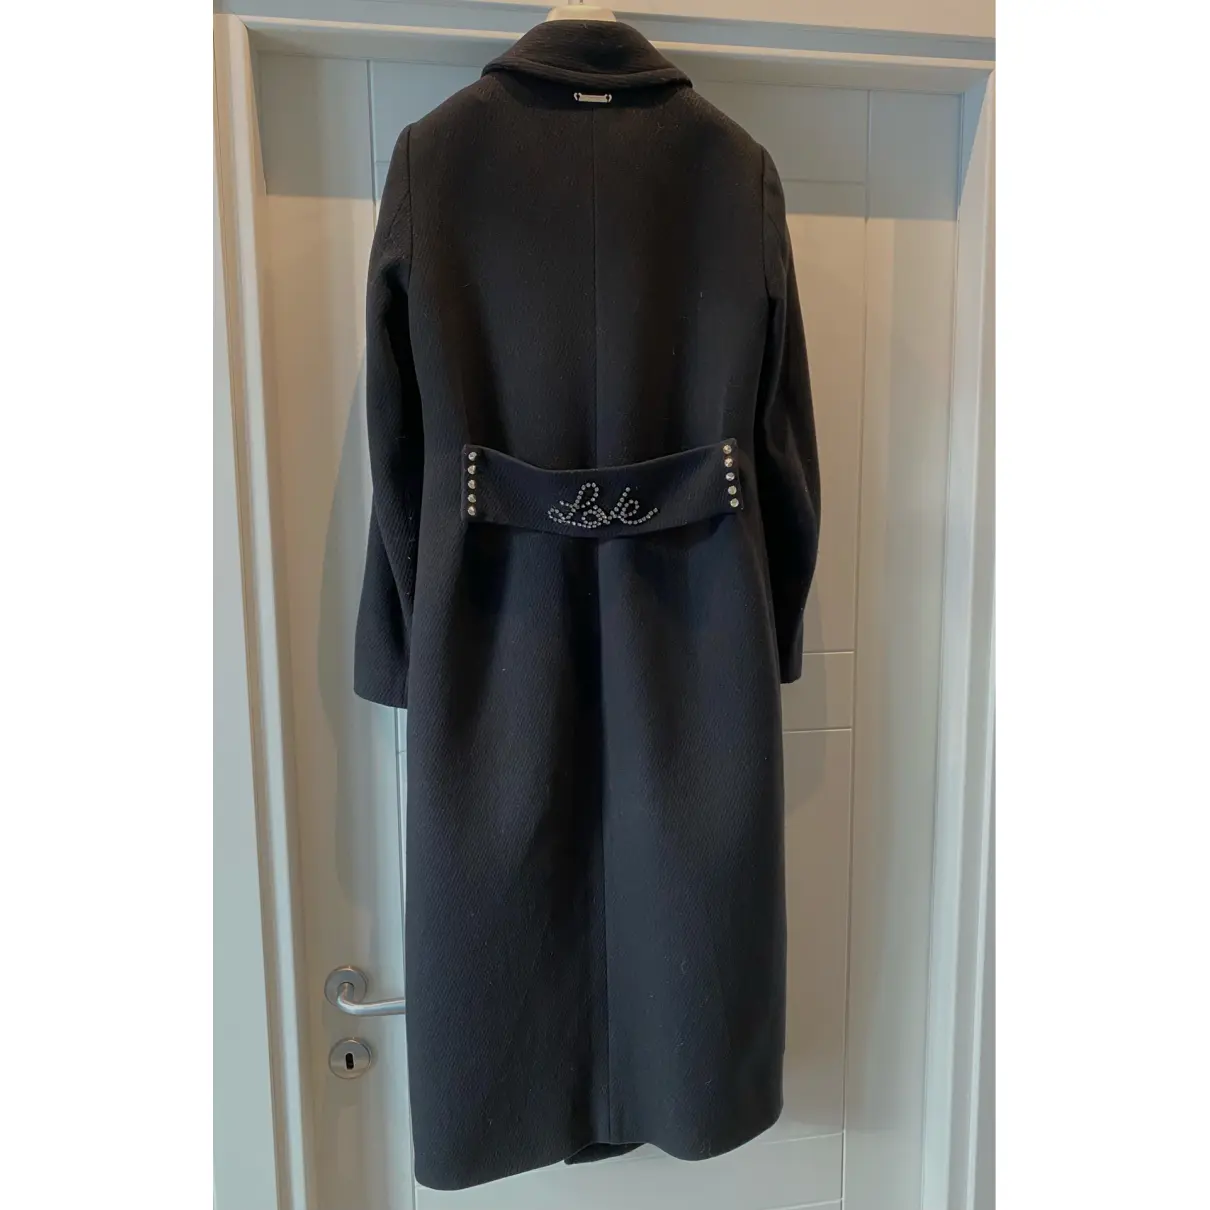 Buy Twinset Wool coat online